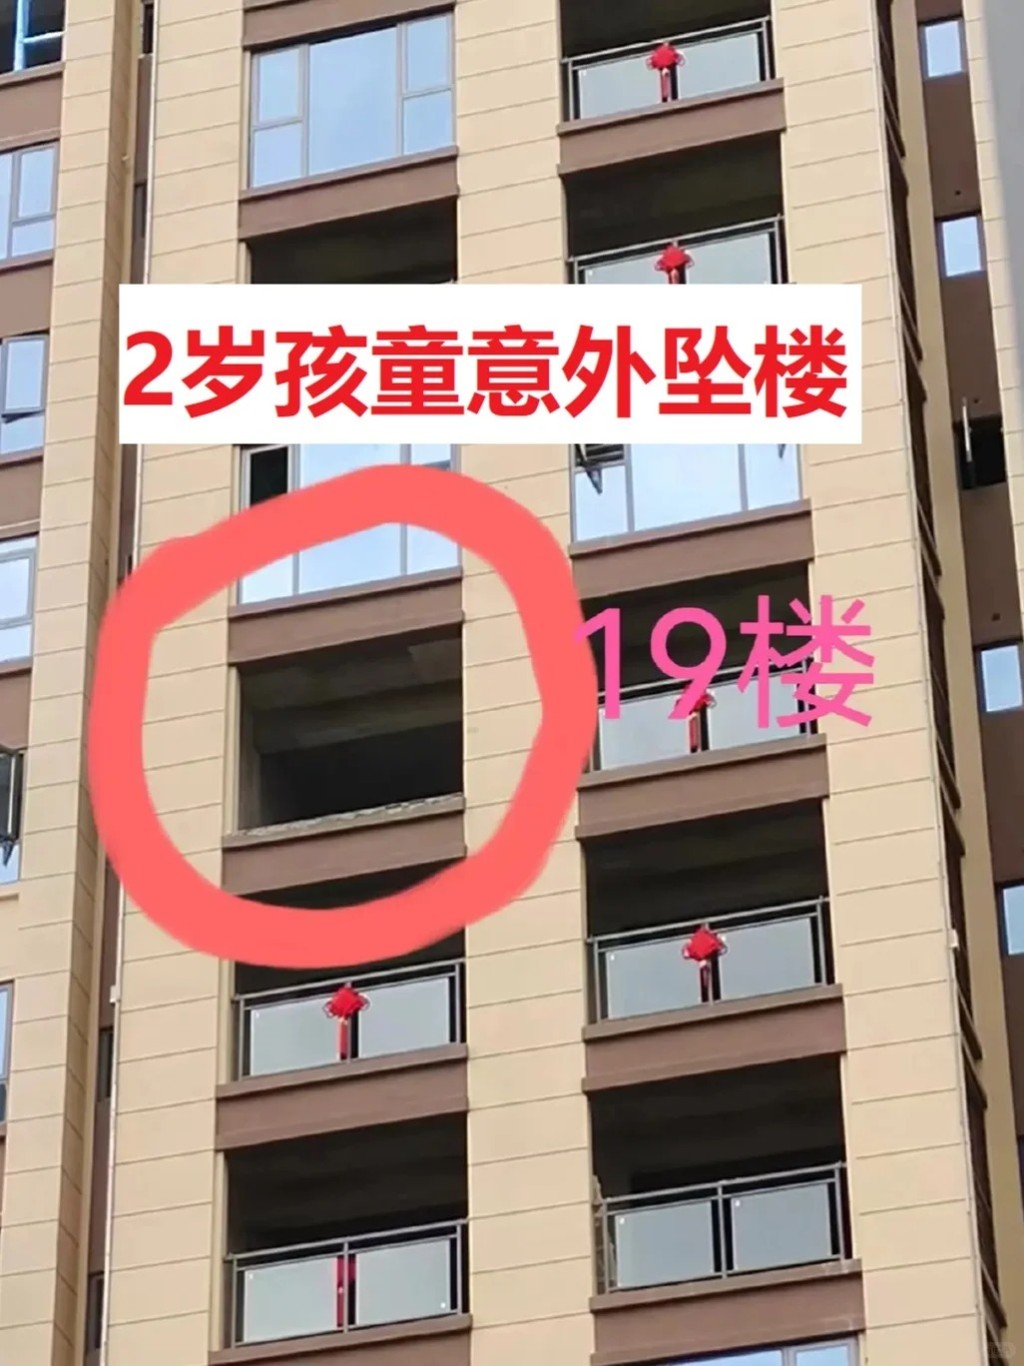 四川有2岁小童在新楼的露台坠下身亡。